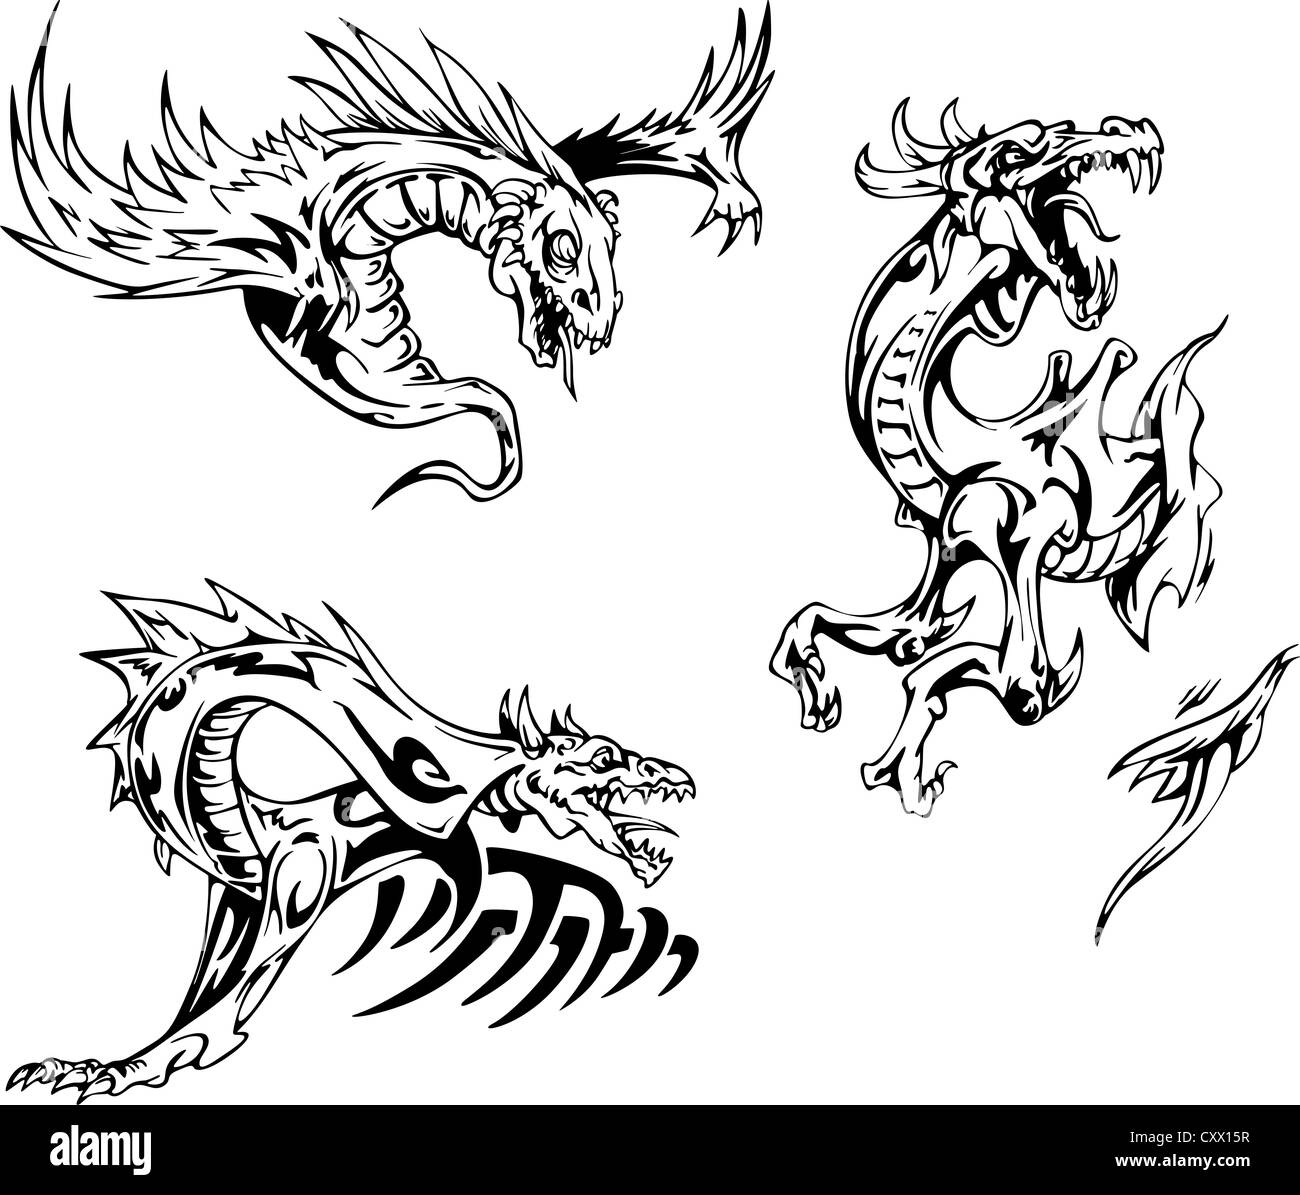 Motifs de tatouage de dragon. Série d'illustrations vectorielles. Banque D'Images